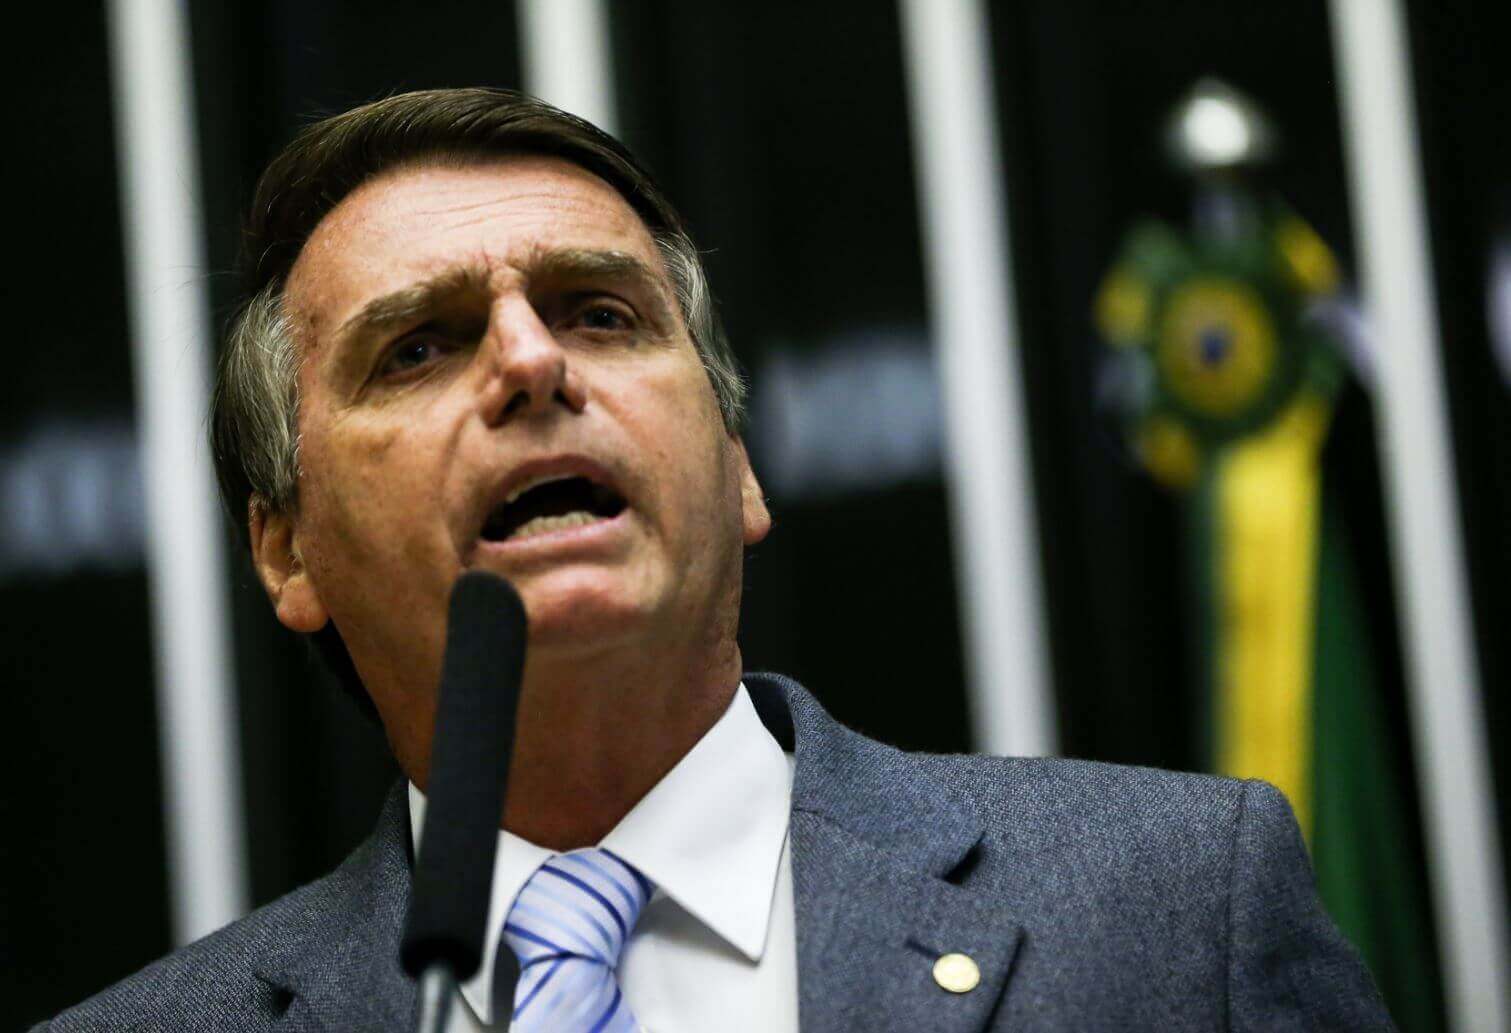 Brasilien: Der rechtsextreme Neoliberale Bolsonaro ist neuer Präsident – und für Folter, Gewalt gegen Homosexuelle und politische „Säuberungen“